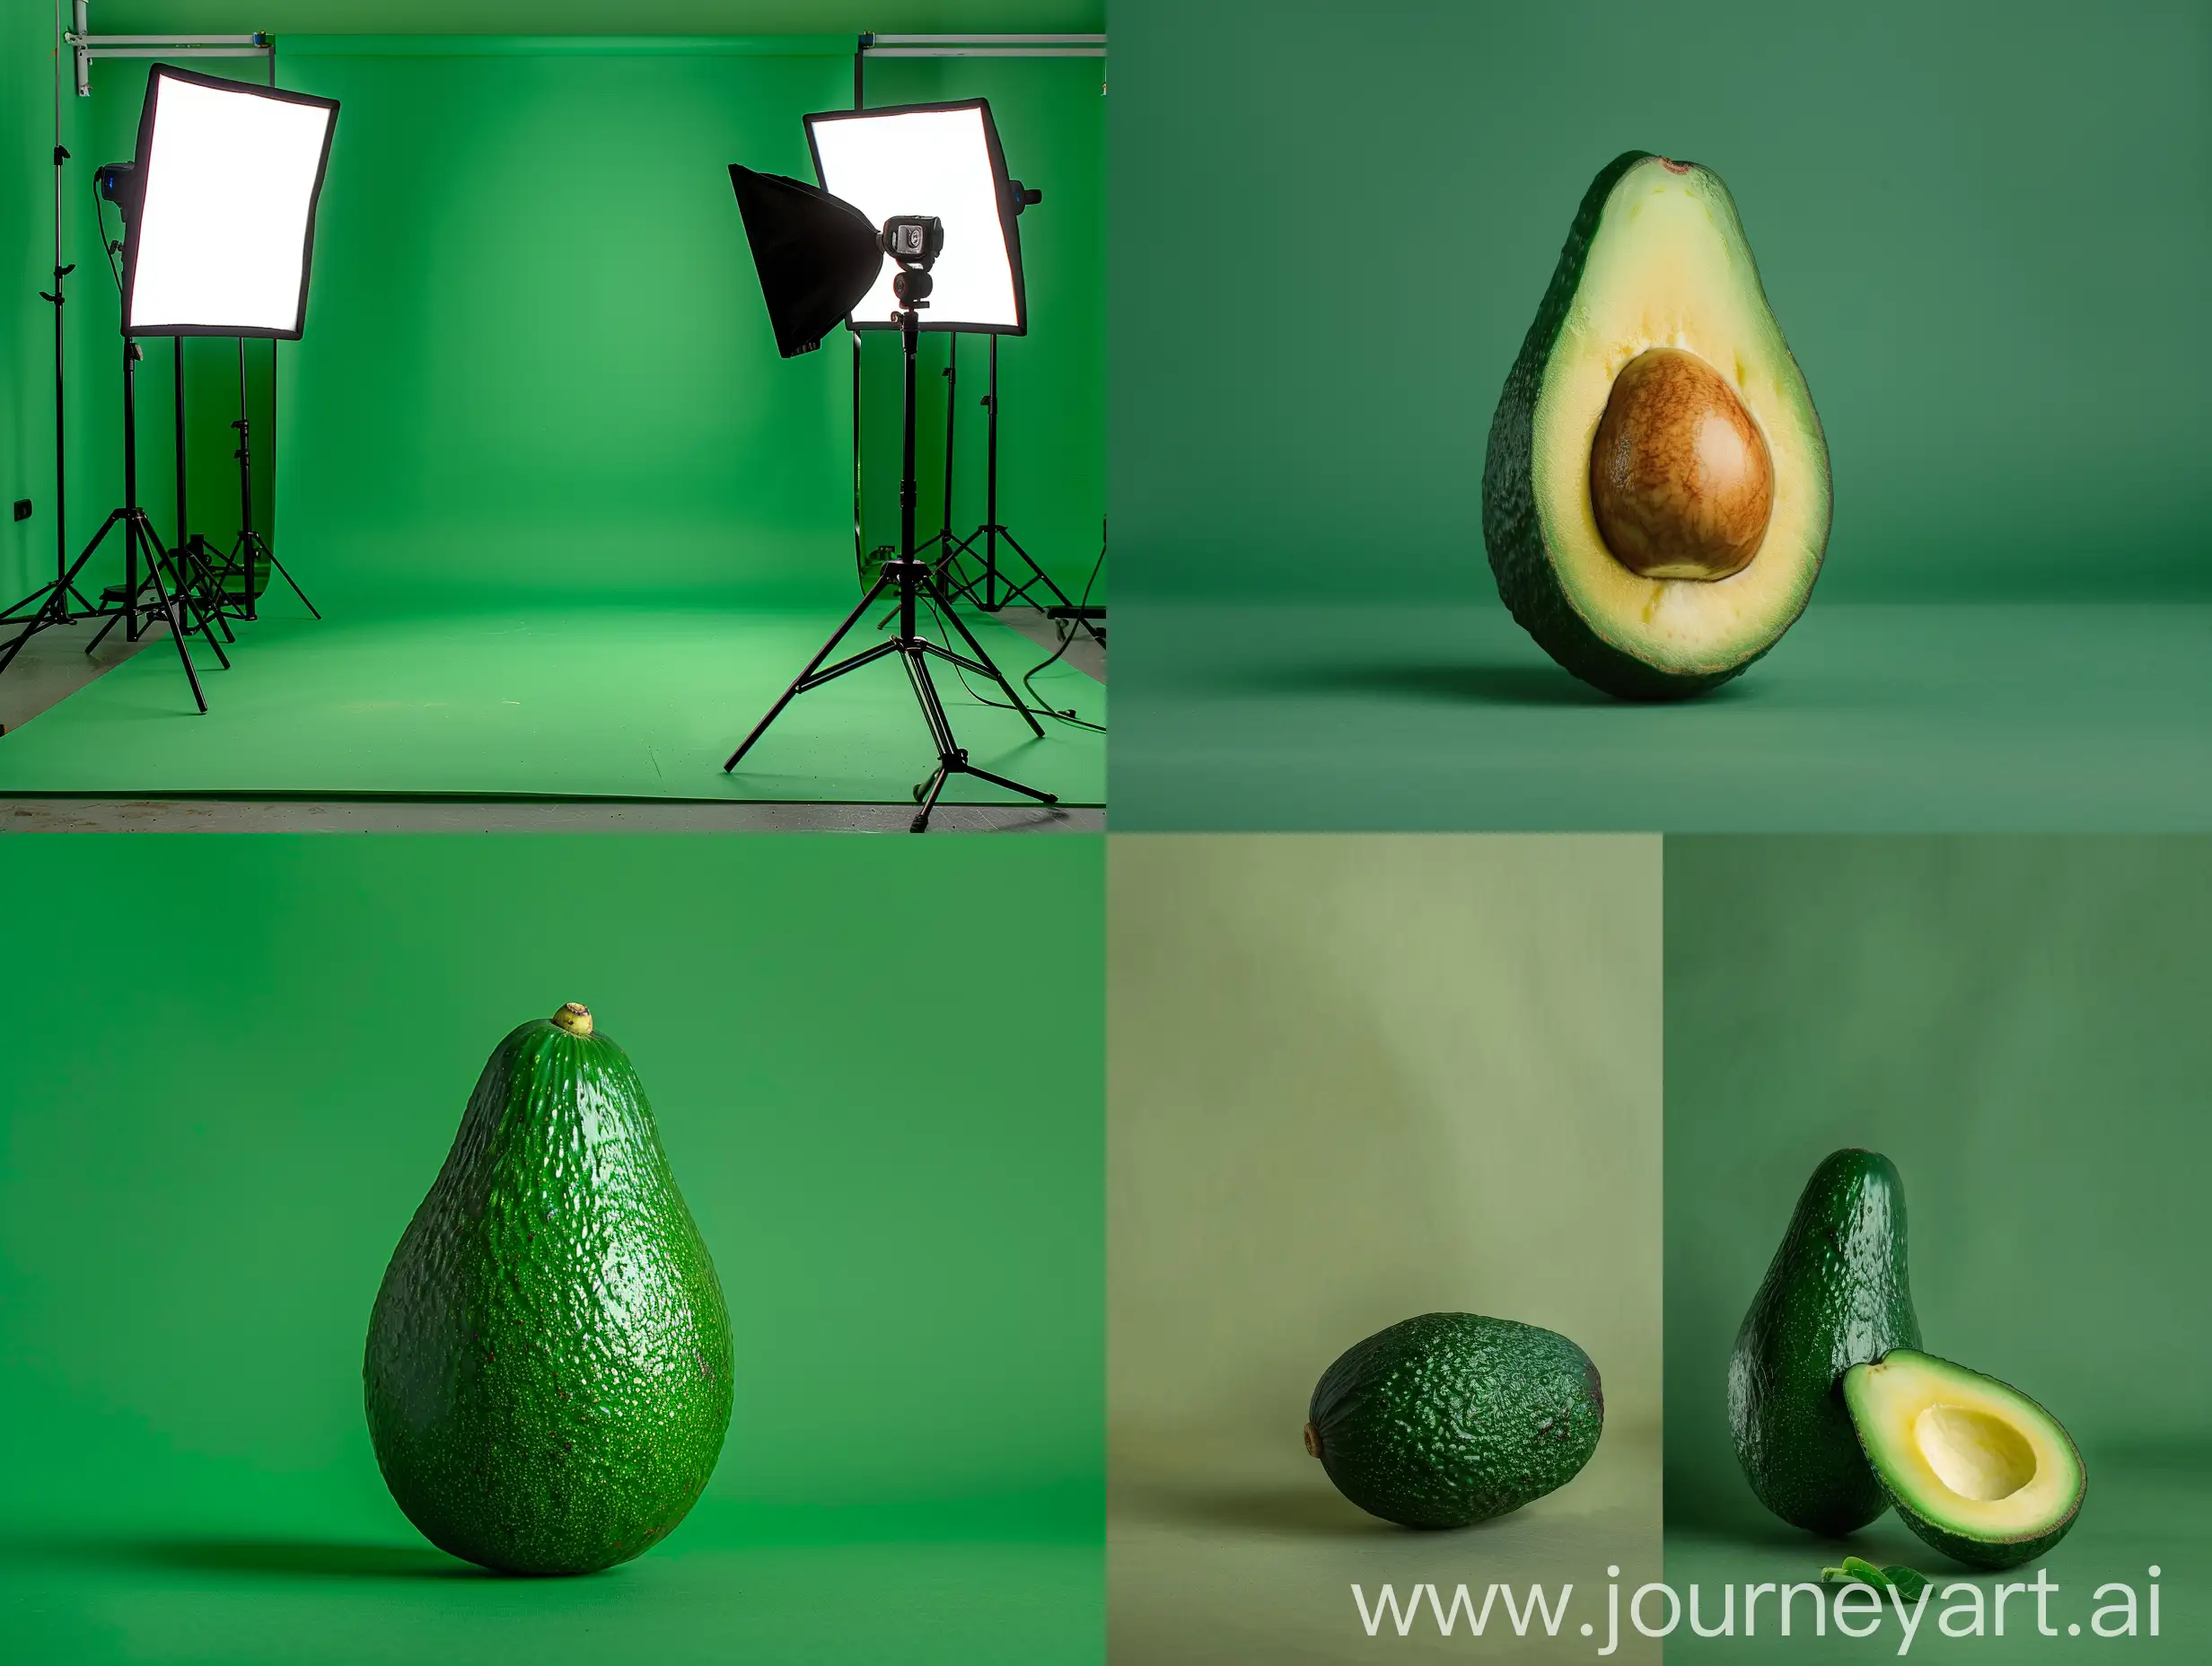 Avocado-Green-Studio-Photography-Vibrant-Artistic-Composition